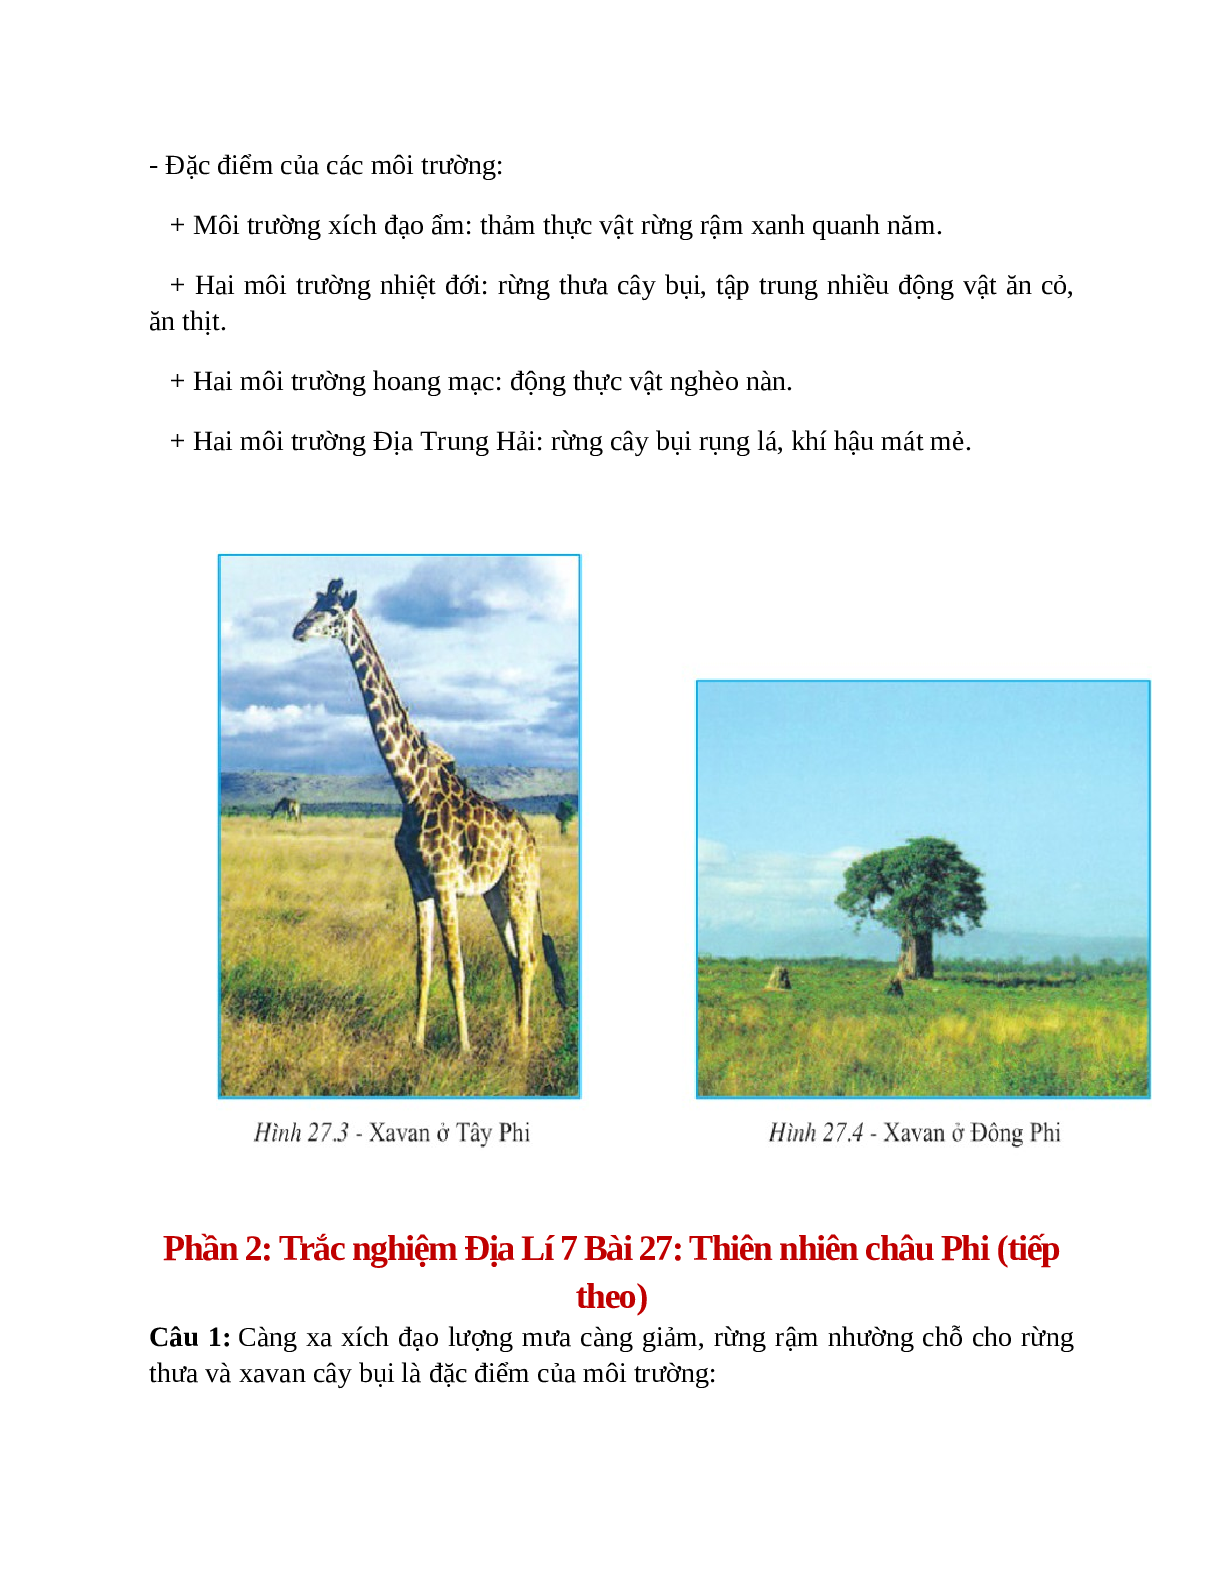 Địa Lí 7 Bài 27 (Lý thuyết và trắc nghiệm): Thiên nhiên châu Phi (tiếp theo) (trang 3)